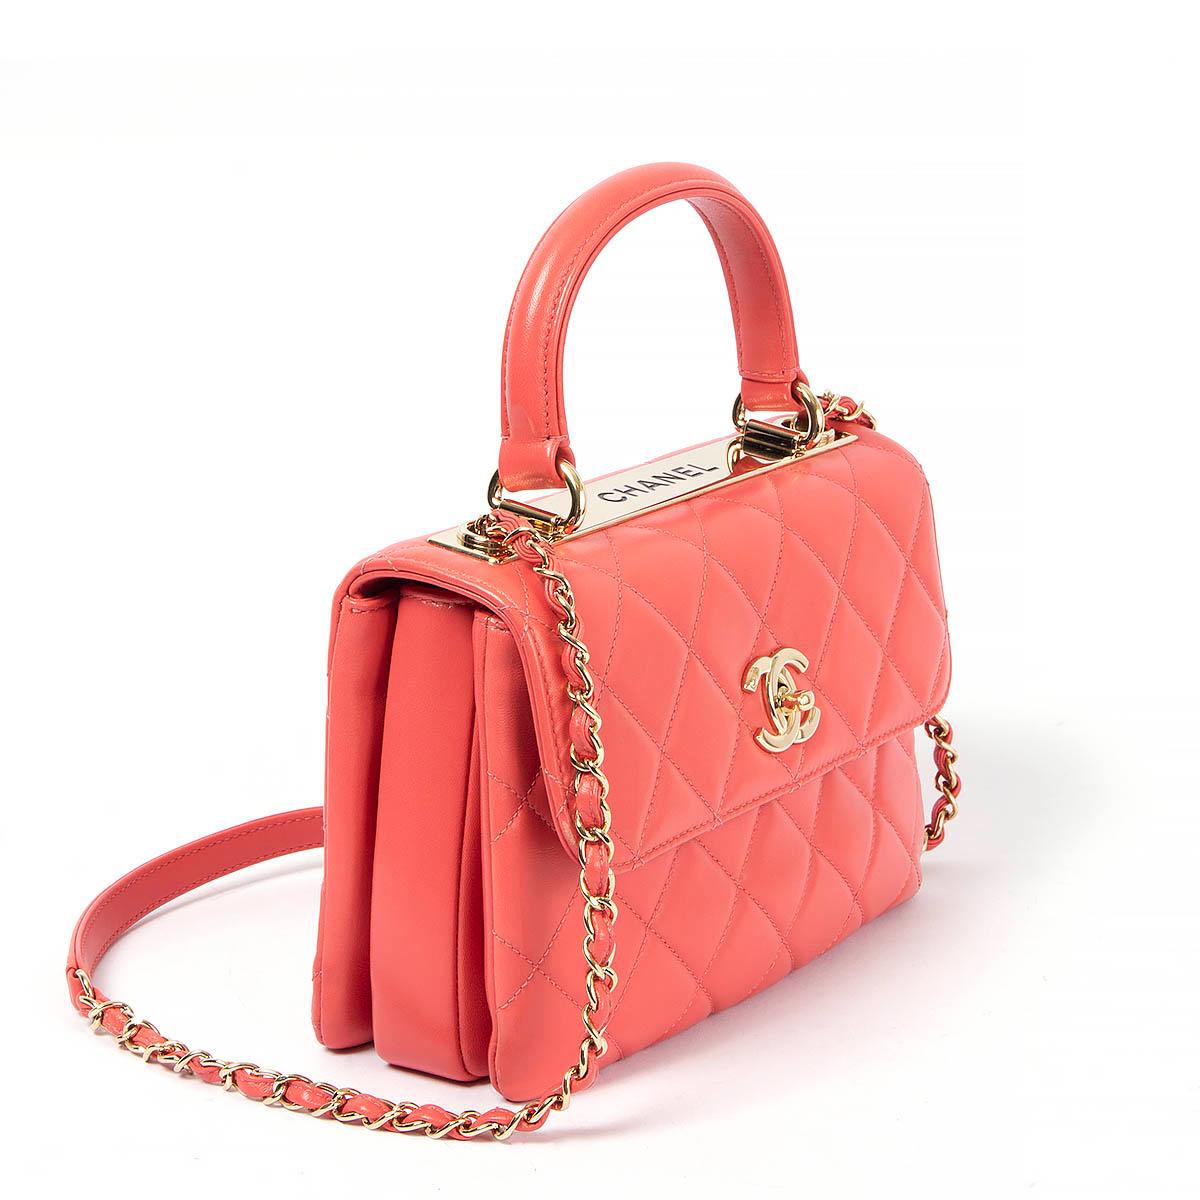 100% authentique Chanel Trendy CC Small Top Handle Bag en cuir d'agneau rose corail avec quincaillerie dorée et plaque de métal gravée 